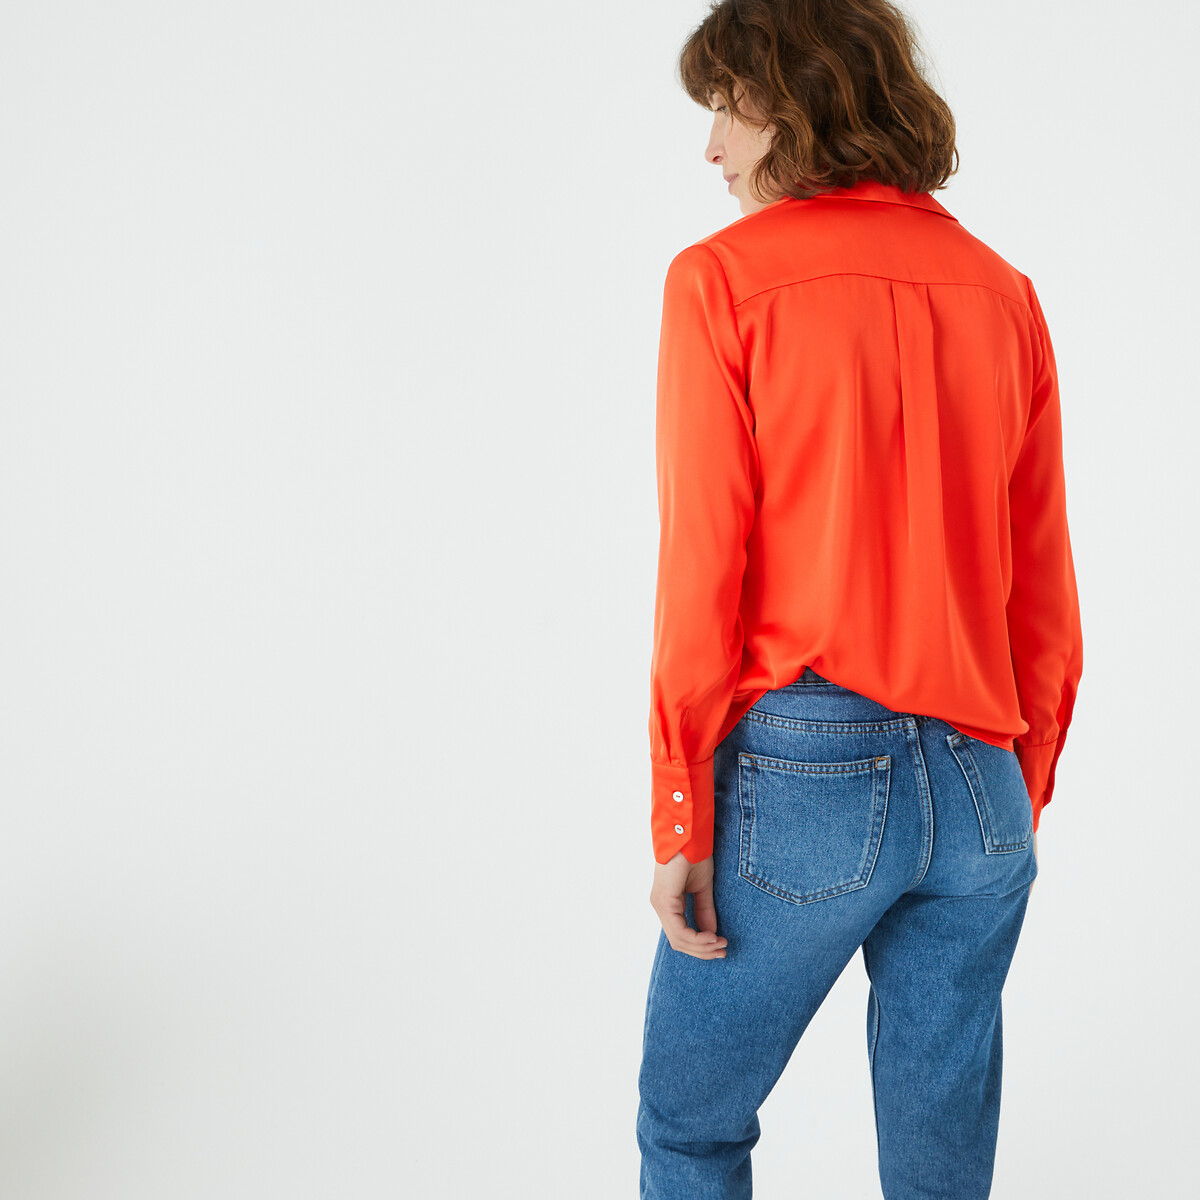 Рубашка с длинными рукавами  50 (FR) - 56 (RUS) оранжевый LaRedoute, размер 50 (FR) - 56 (RUS) Рубашка с длинными рукавами  50 (FR) - 56 (RUS) оранжевый - фото 4